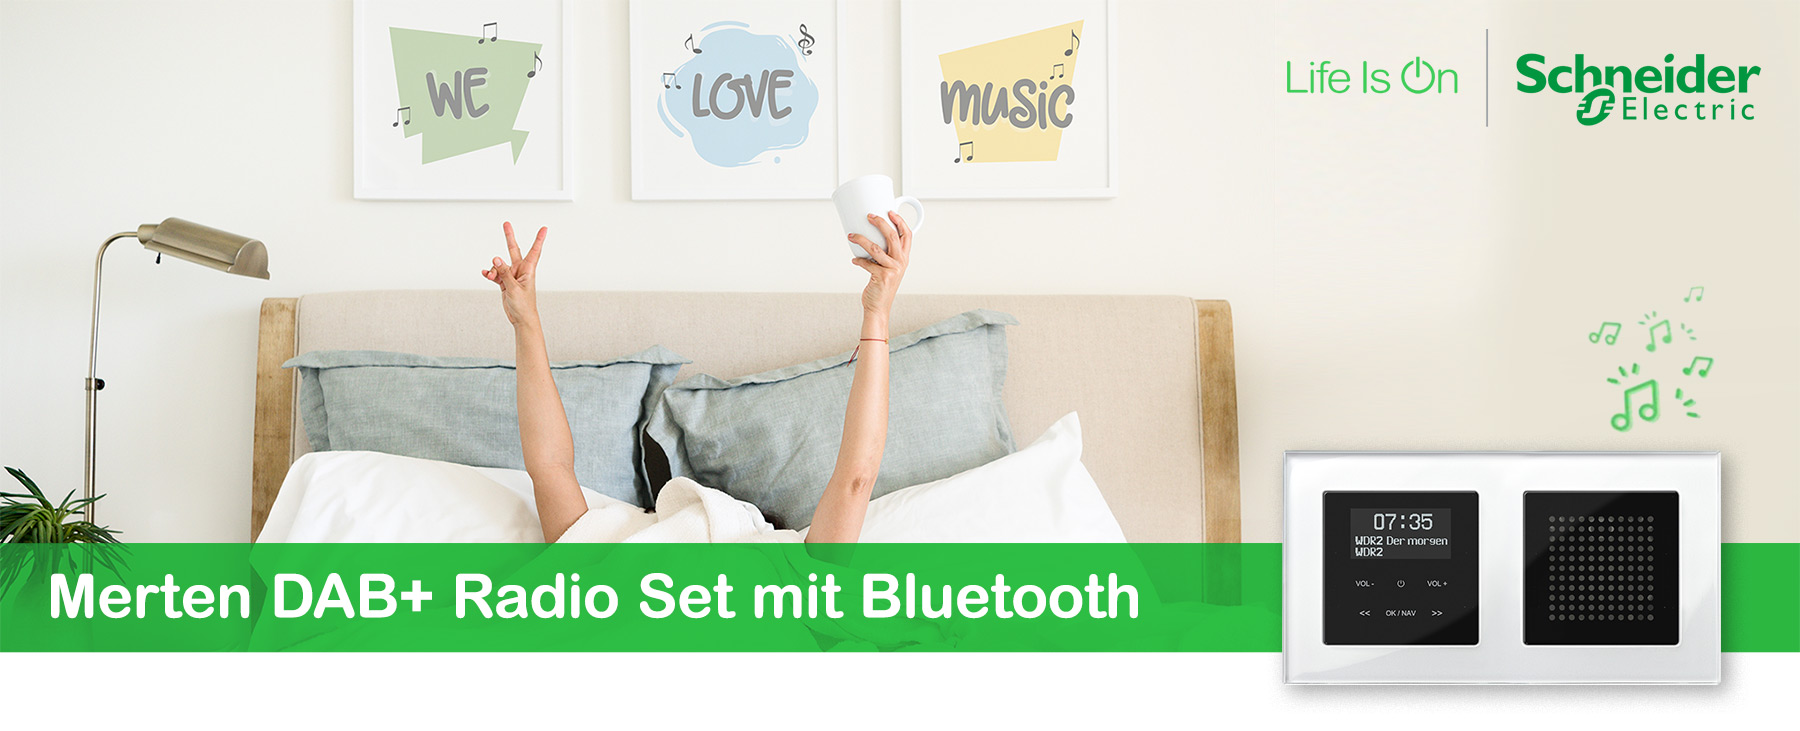 Merten DAB+ Radio Set mit Bluetooth